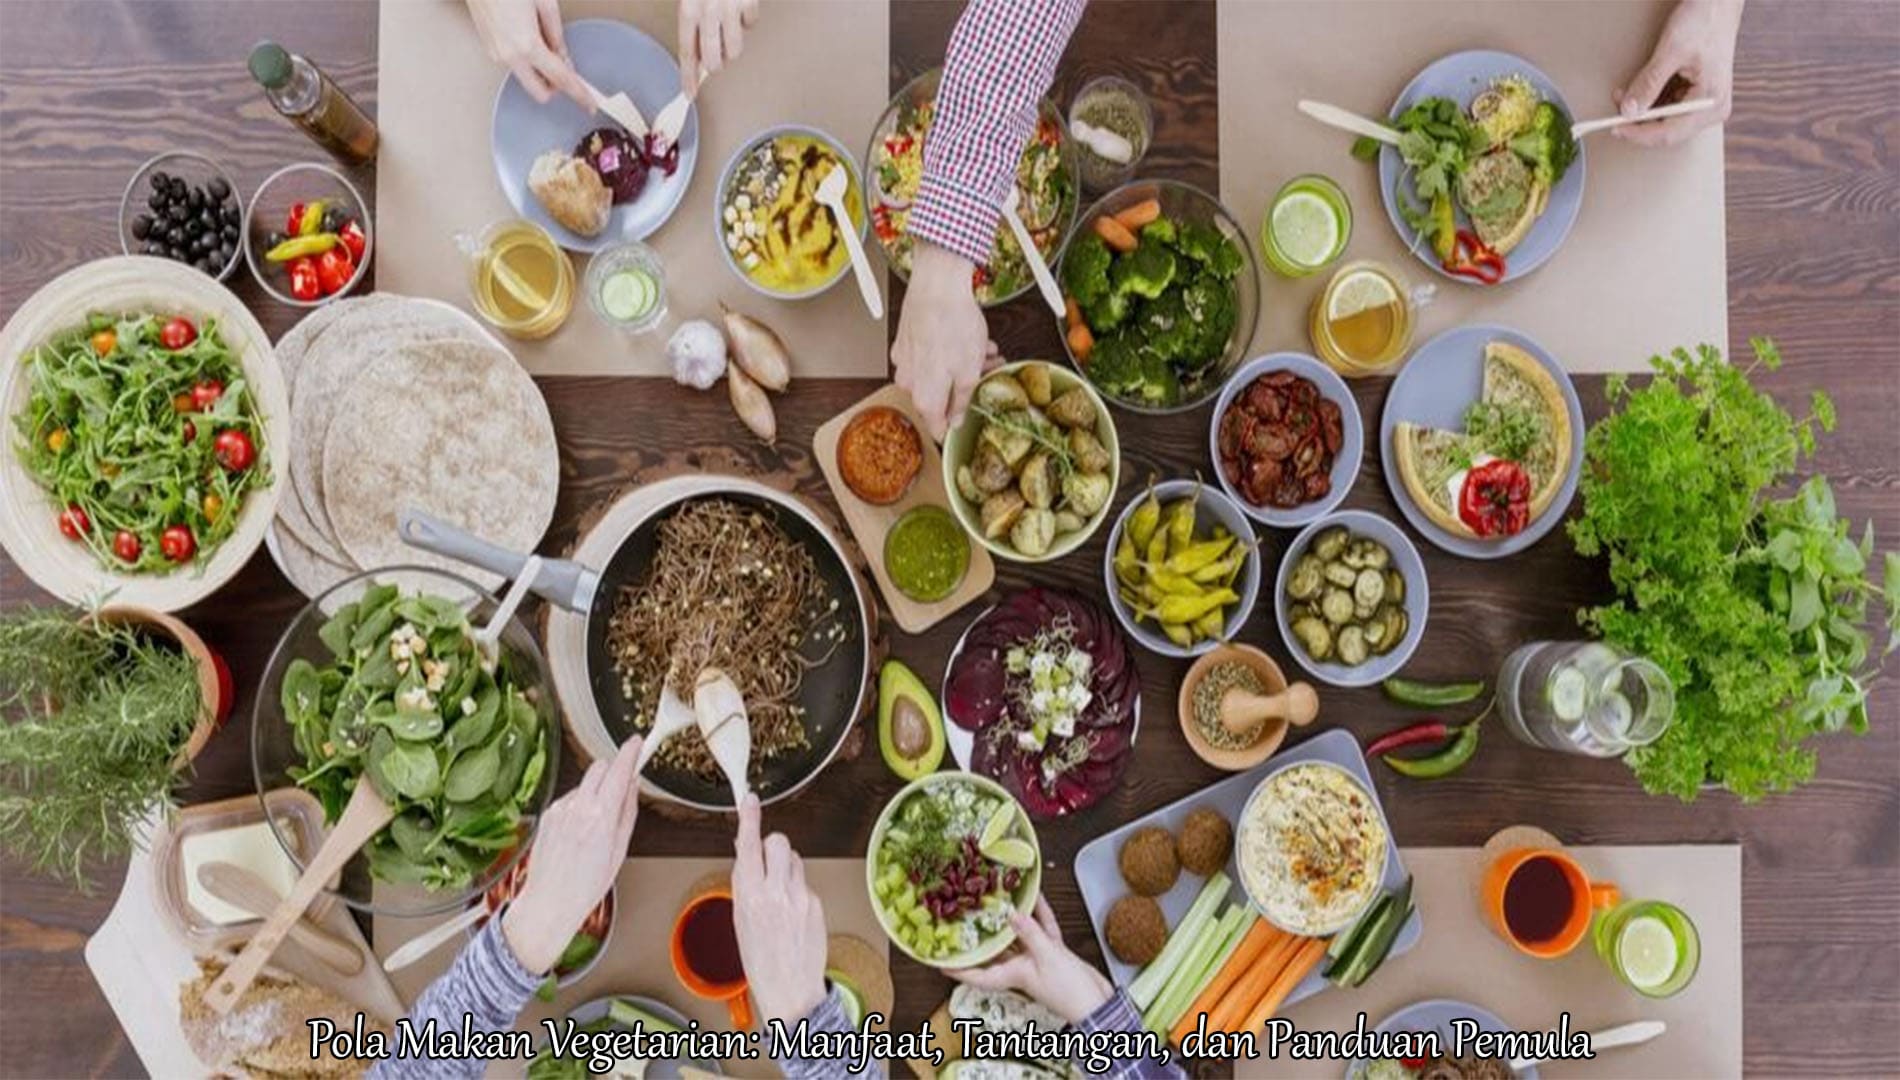 Pola Makan Vegetarian: Manfaat, Tantangan, dan Panduan Pemula